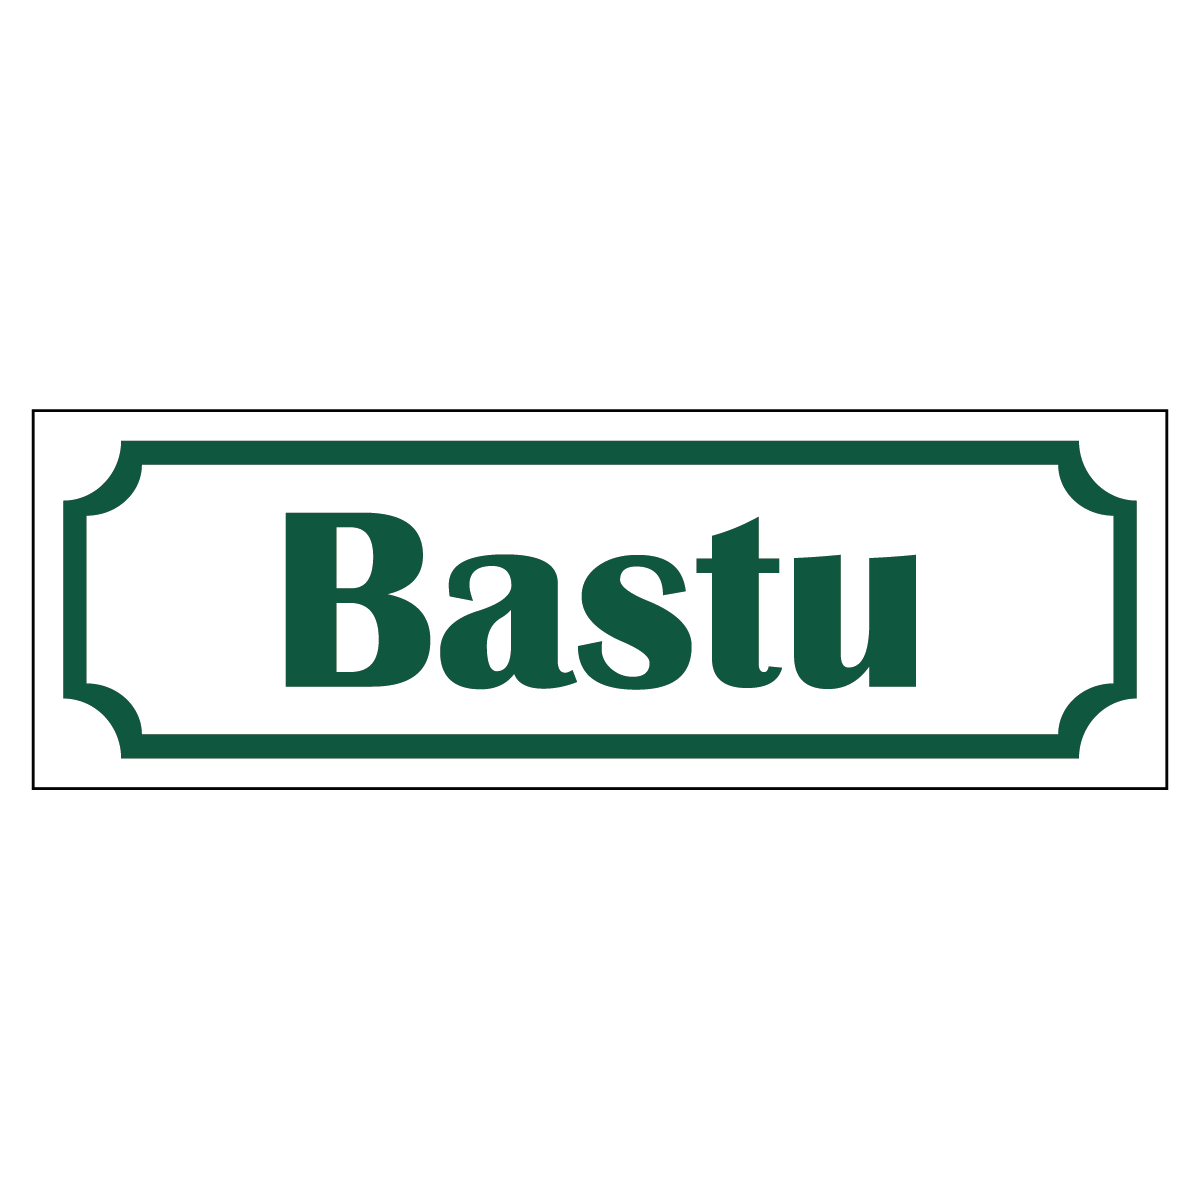 Bastu - Skylt - 150x50mm - Vit - Grön